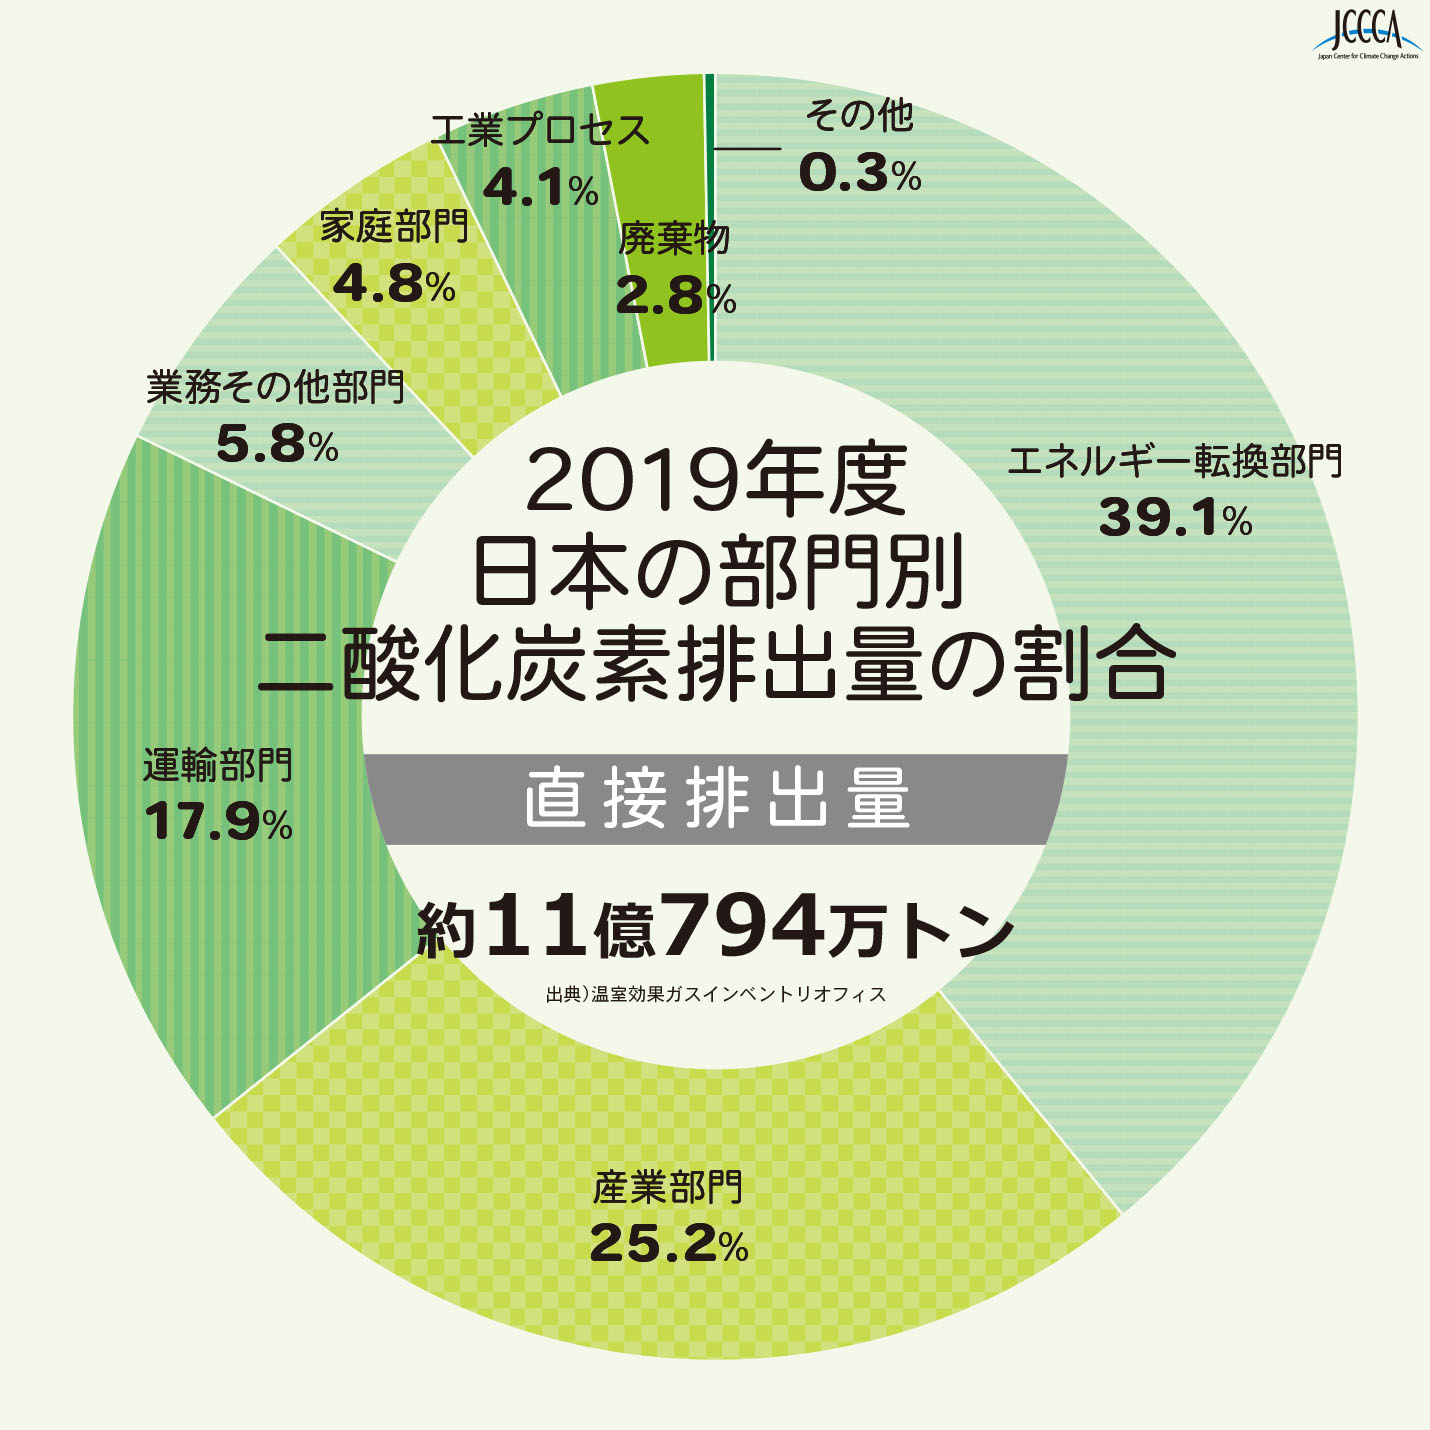 2019年度日本の部門別二酸化炭素排出量の割合